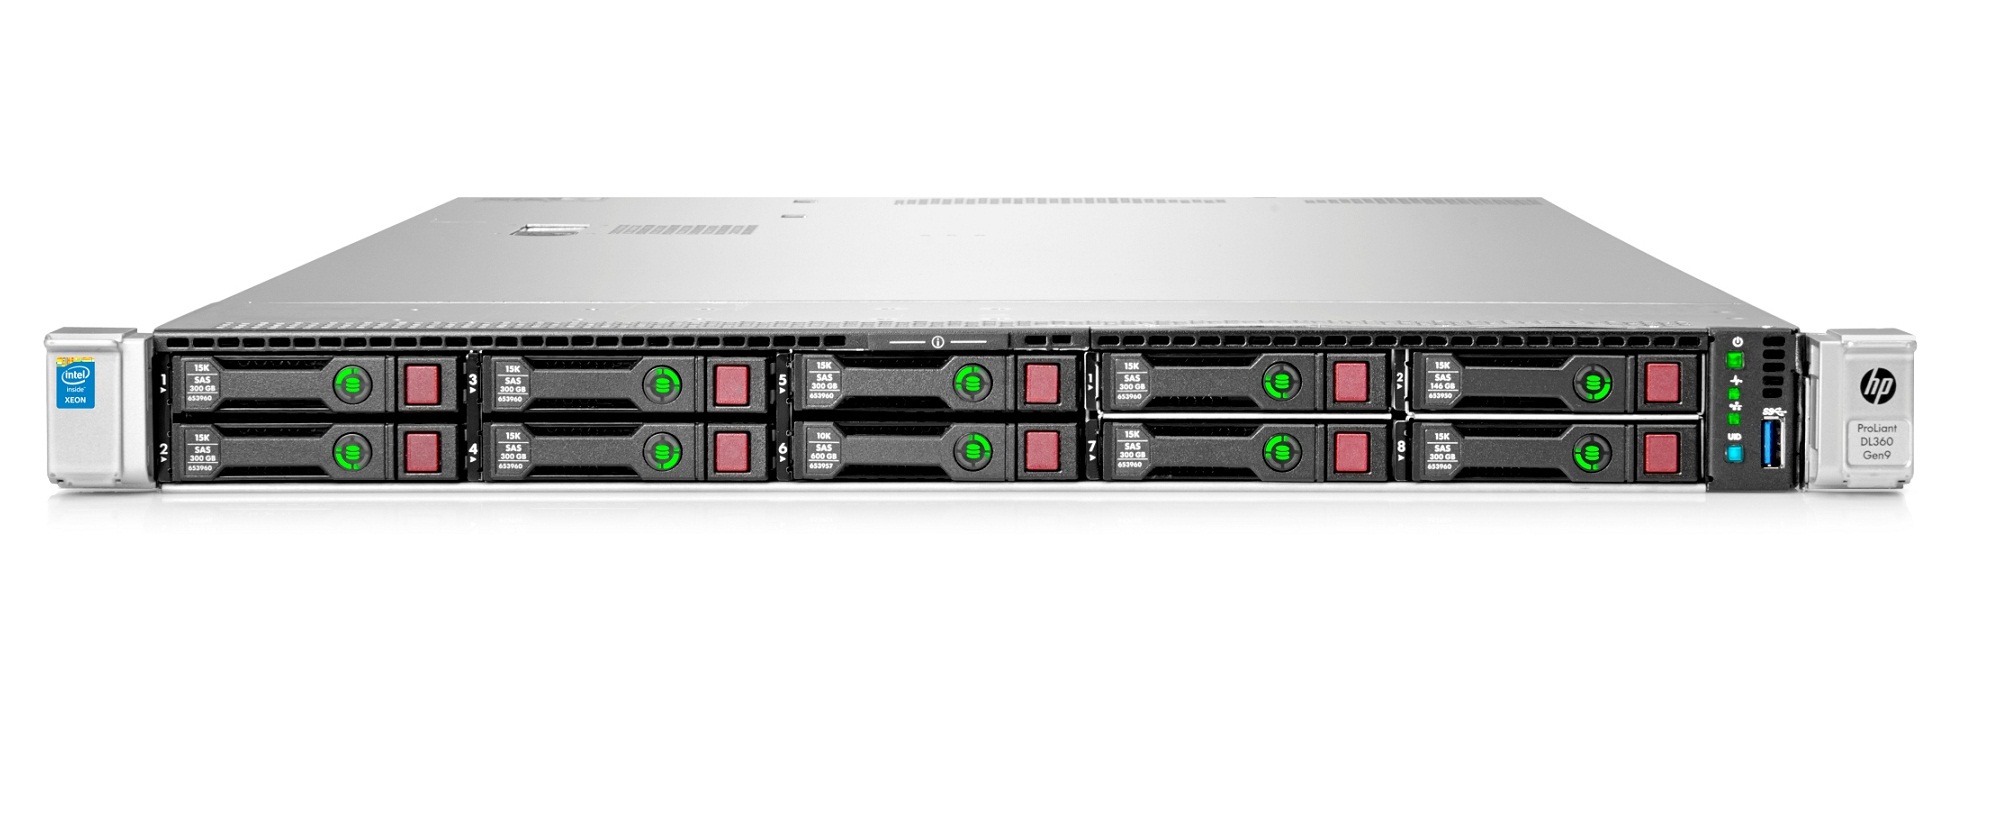 HPE 800082-S01 DL360 Gen9 E5-2697V3 2P 64G 8Sff Server/S-Buy